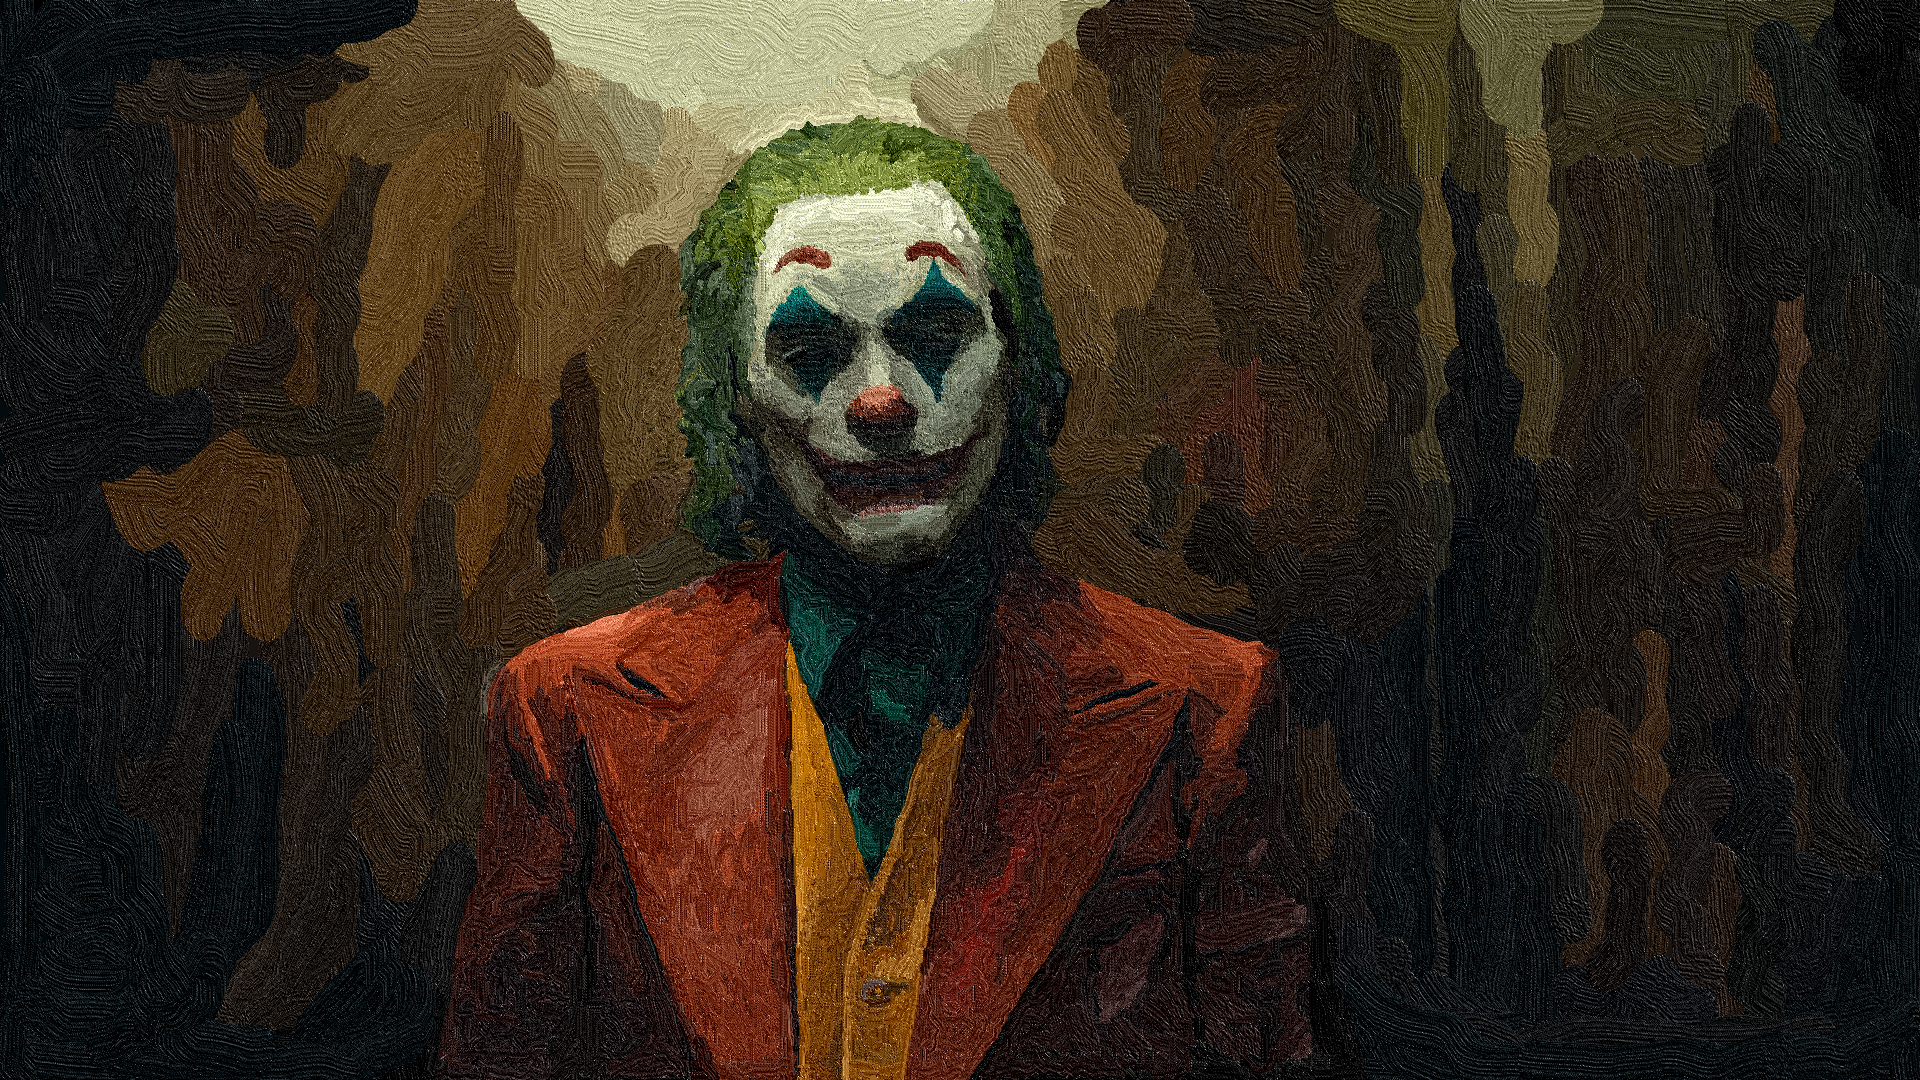 Joker 2019 Movie Paint Brushes 2019 Year Movies Artwork Joaquin Phoenix 1920x1080